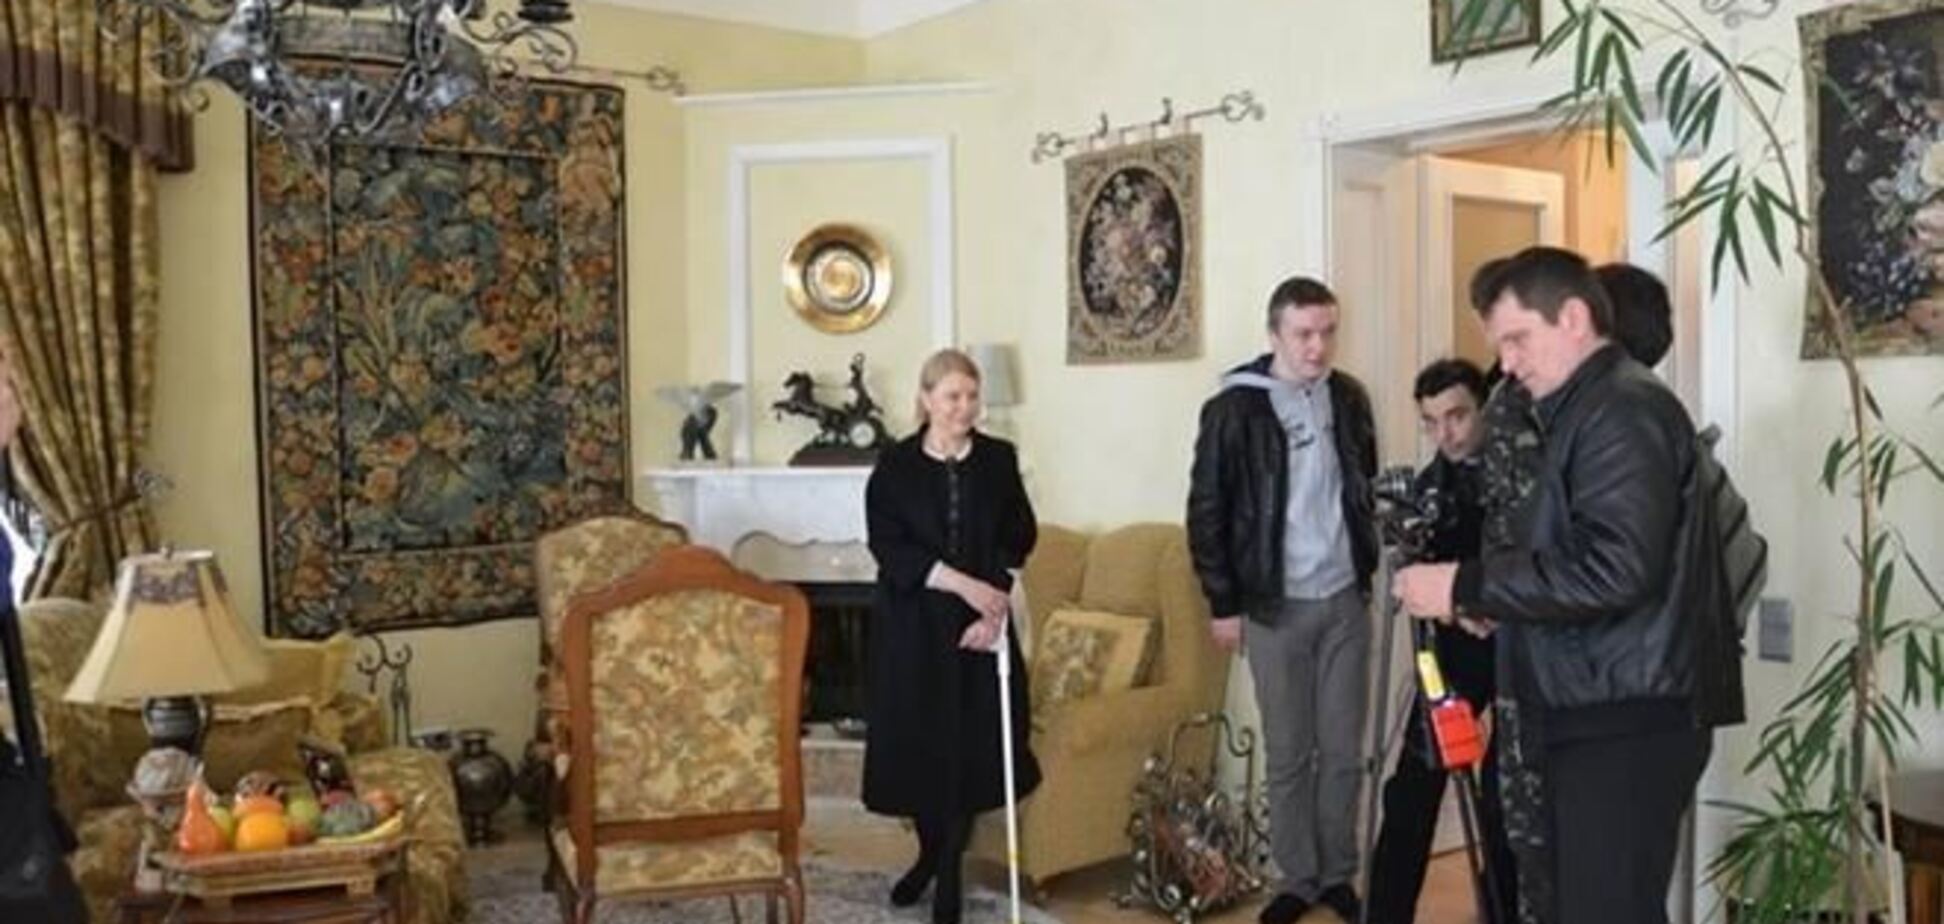 Тимошенко задекларировала 180 тыс. грн, не указав особняк в Конча-Заспе